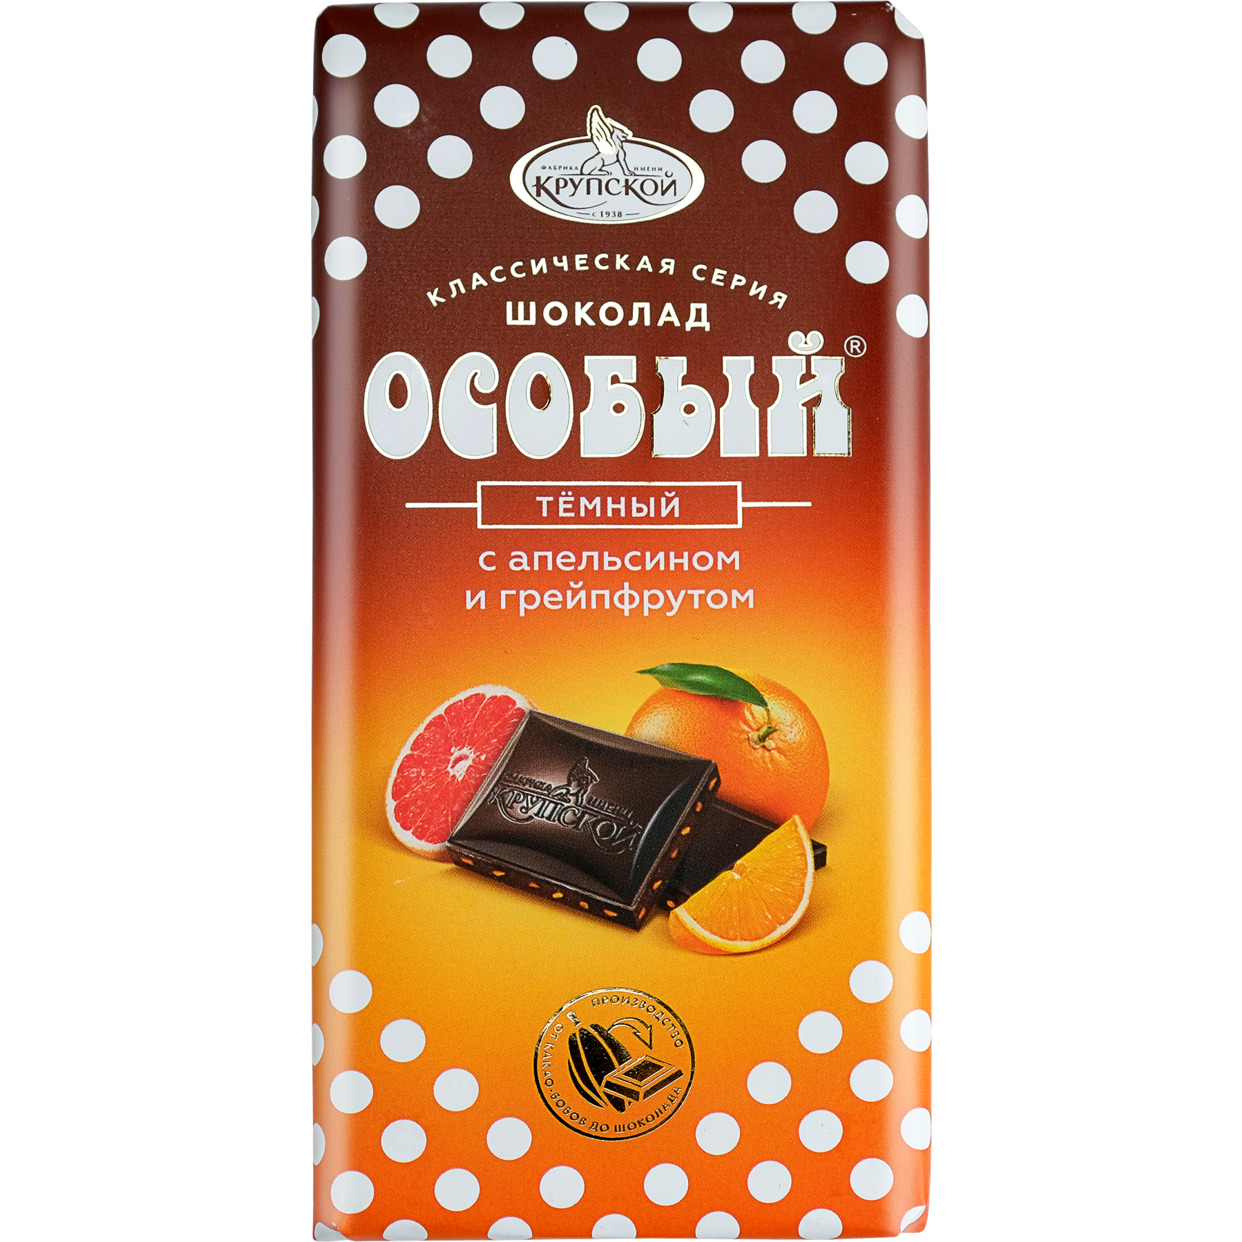 Темный шоколад "Особый" с апельсином и грейпфрутом 90 г по акции в Пятерочке